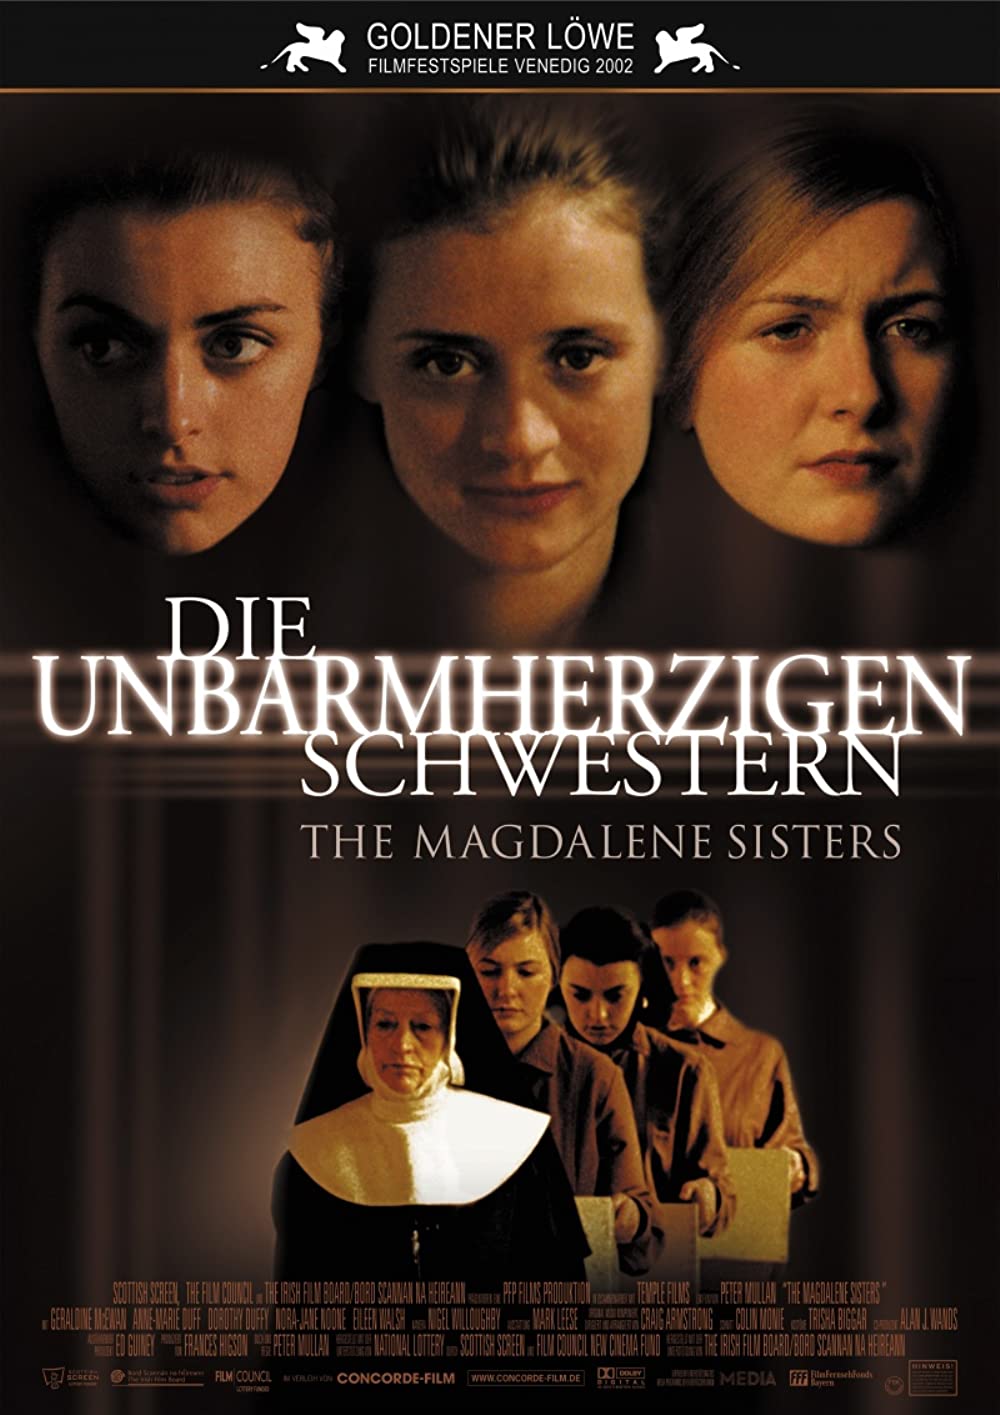 Filmbeschreibung zu The Magdalene Sisters